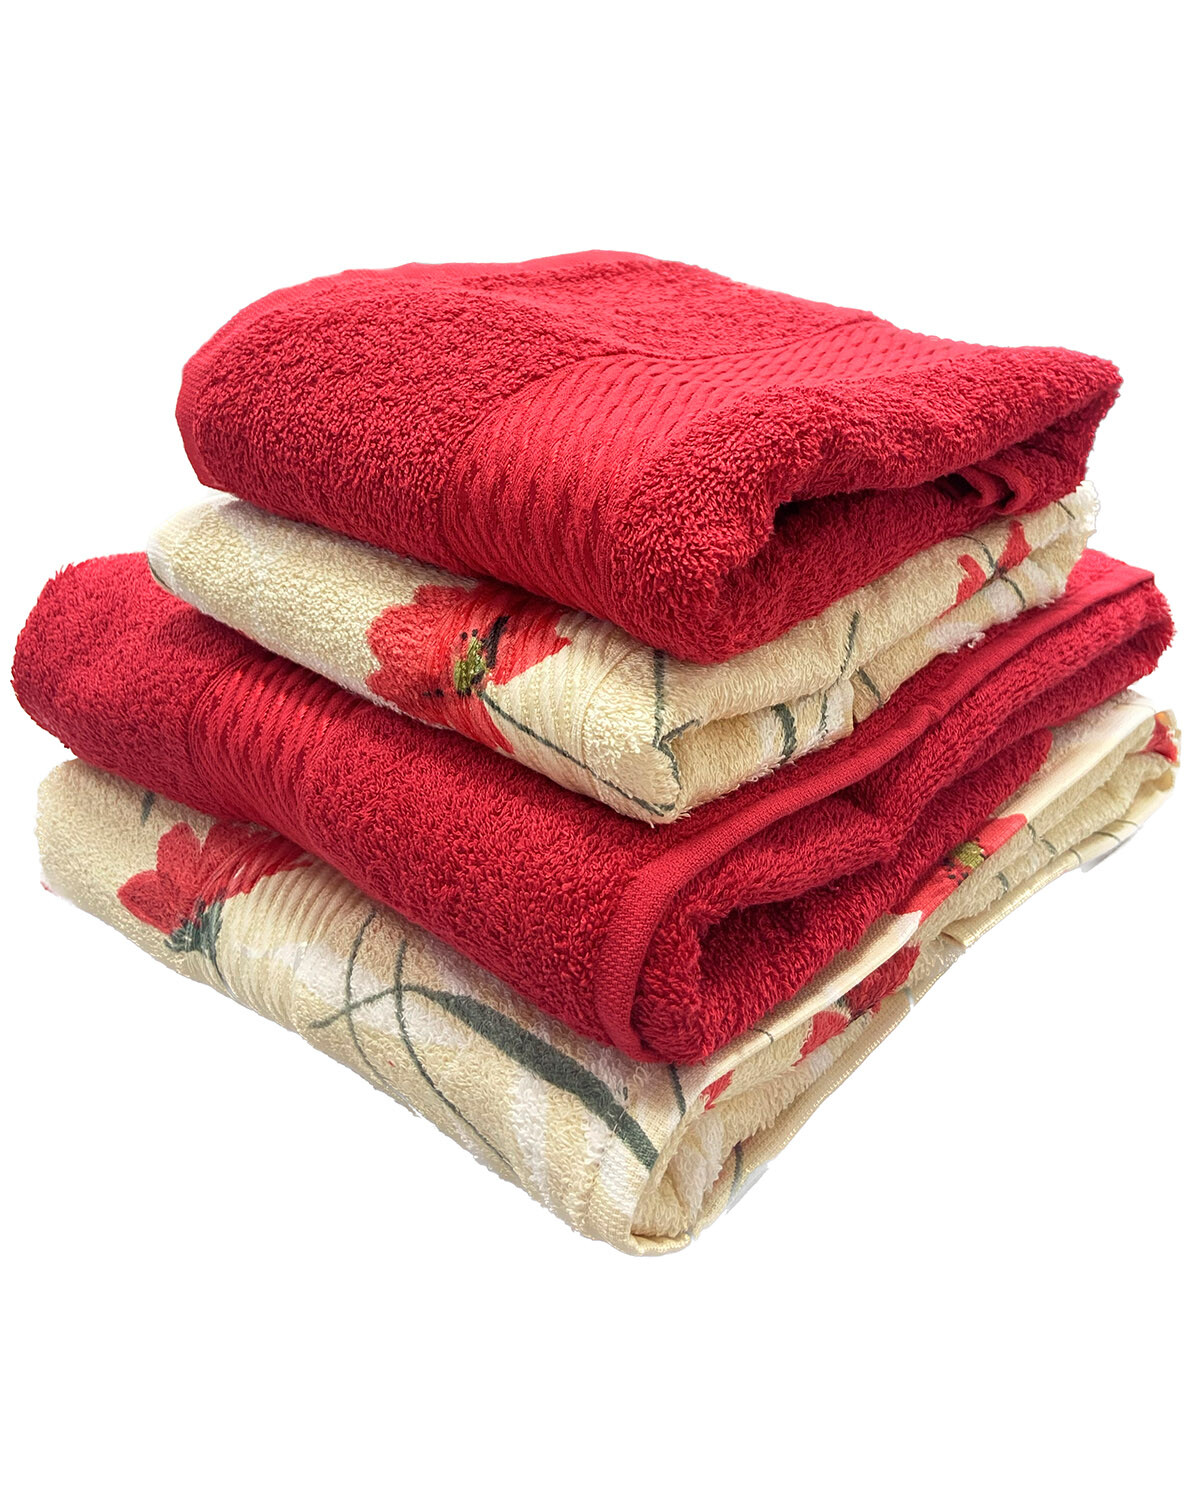 Toallas de baño 2019, toallas 100% algodón decoradas, Toallas de Portugal